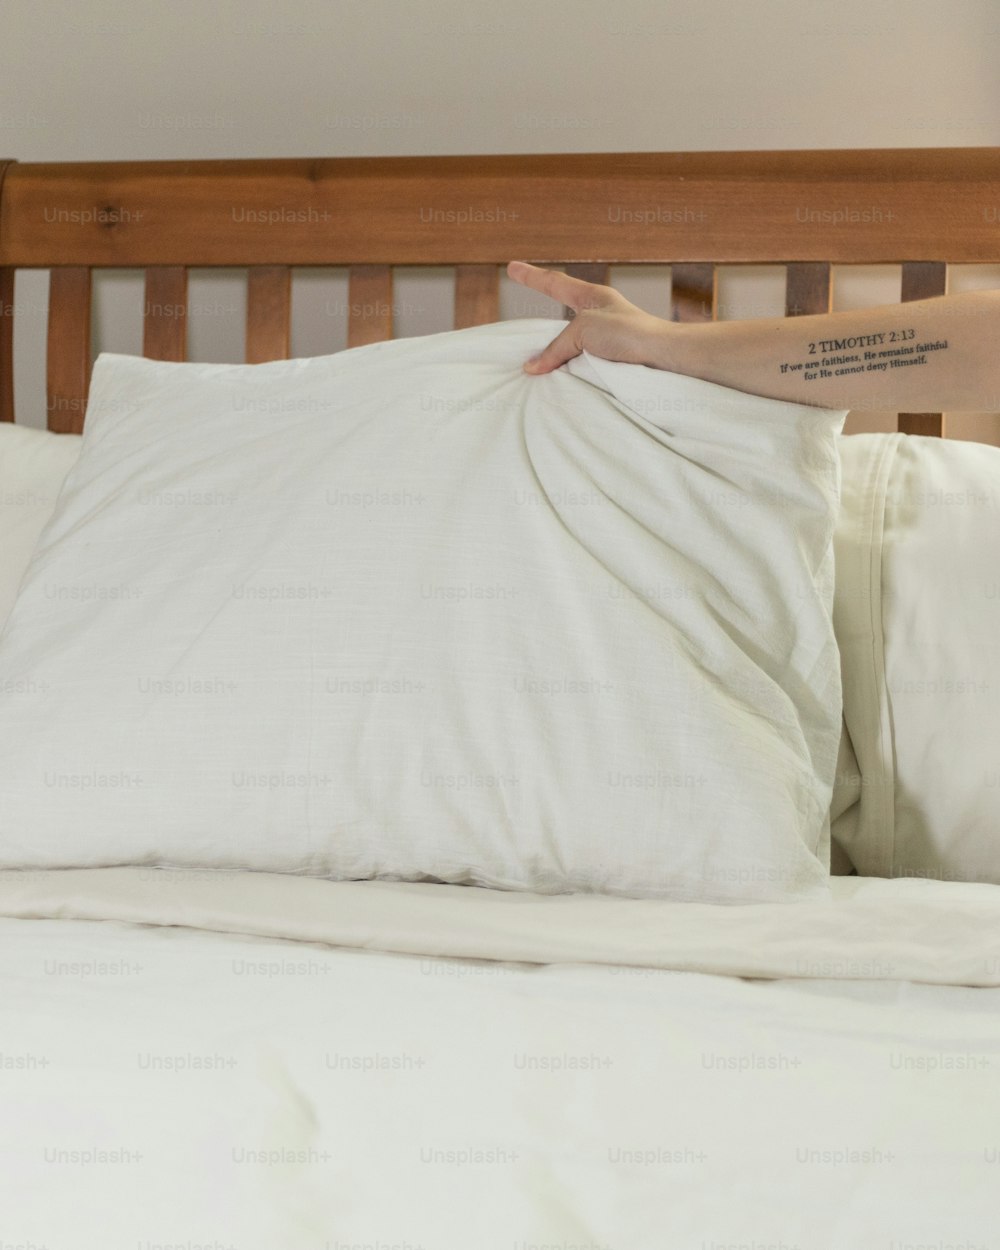 uma pessoa pegando um travesseiro em uma cama